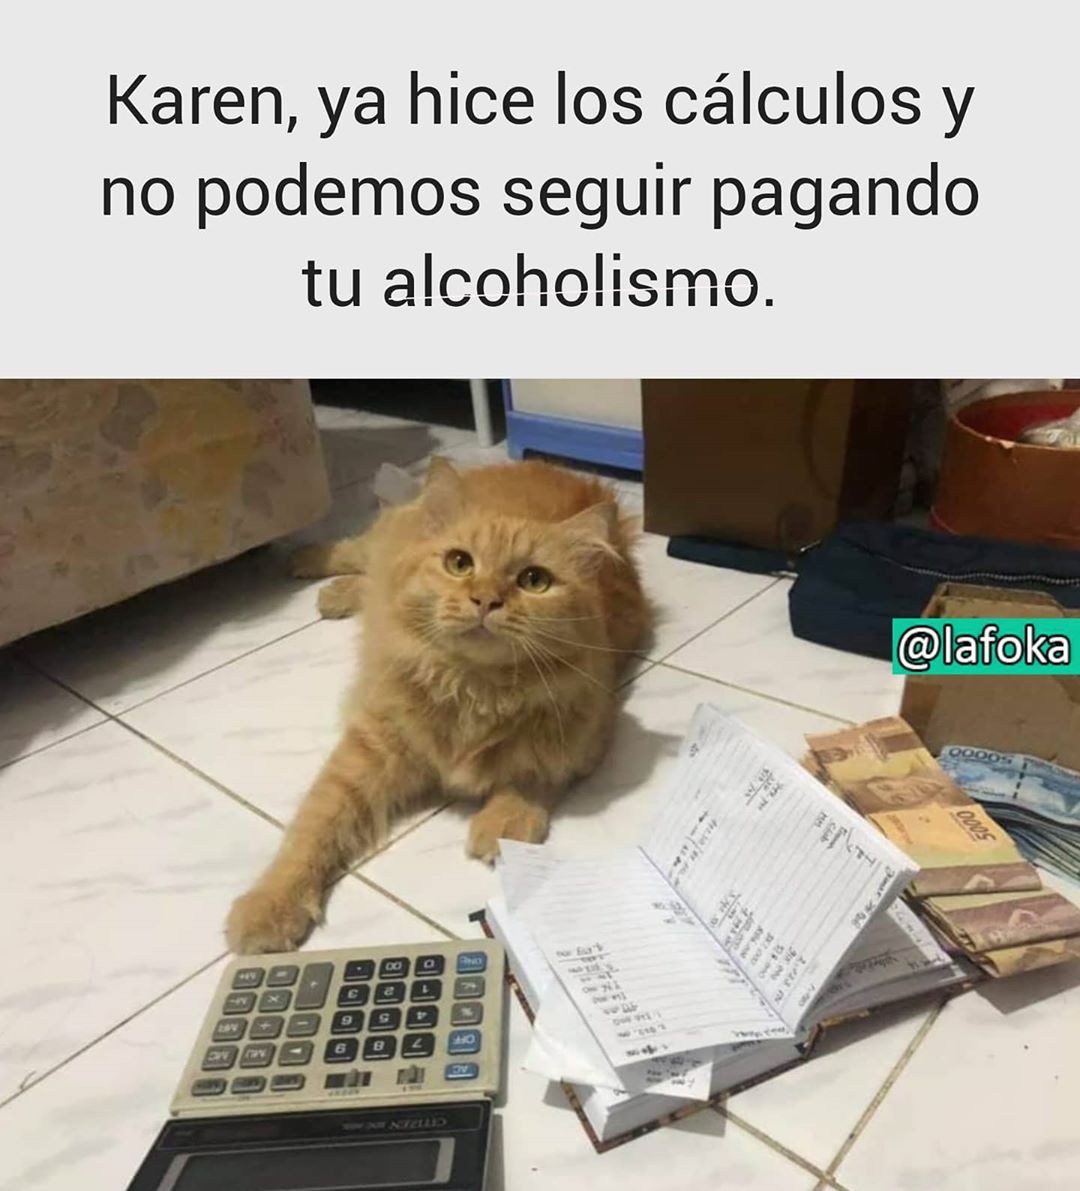 Karen, ya hice los cálculos y no podemos seguir pagando tu alcoholismo.